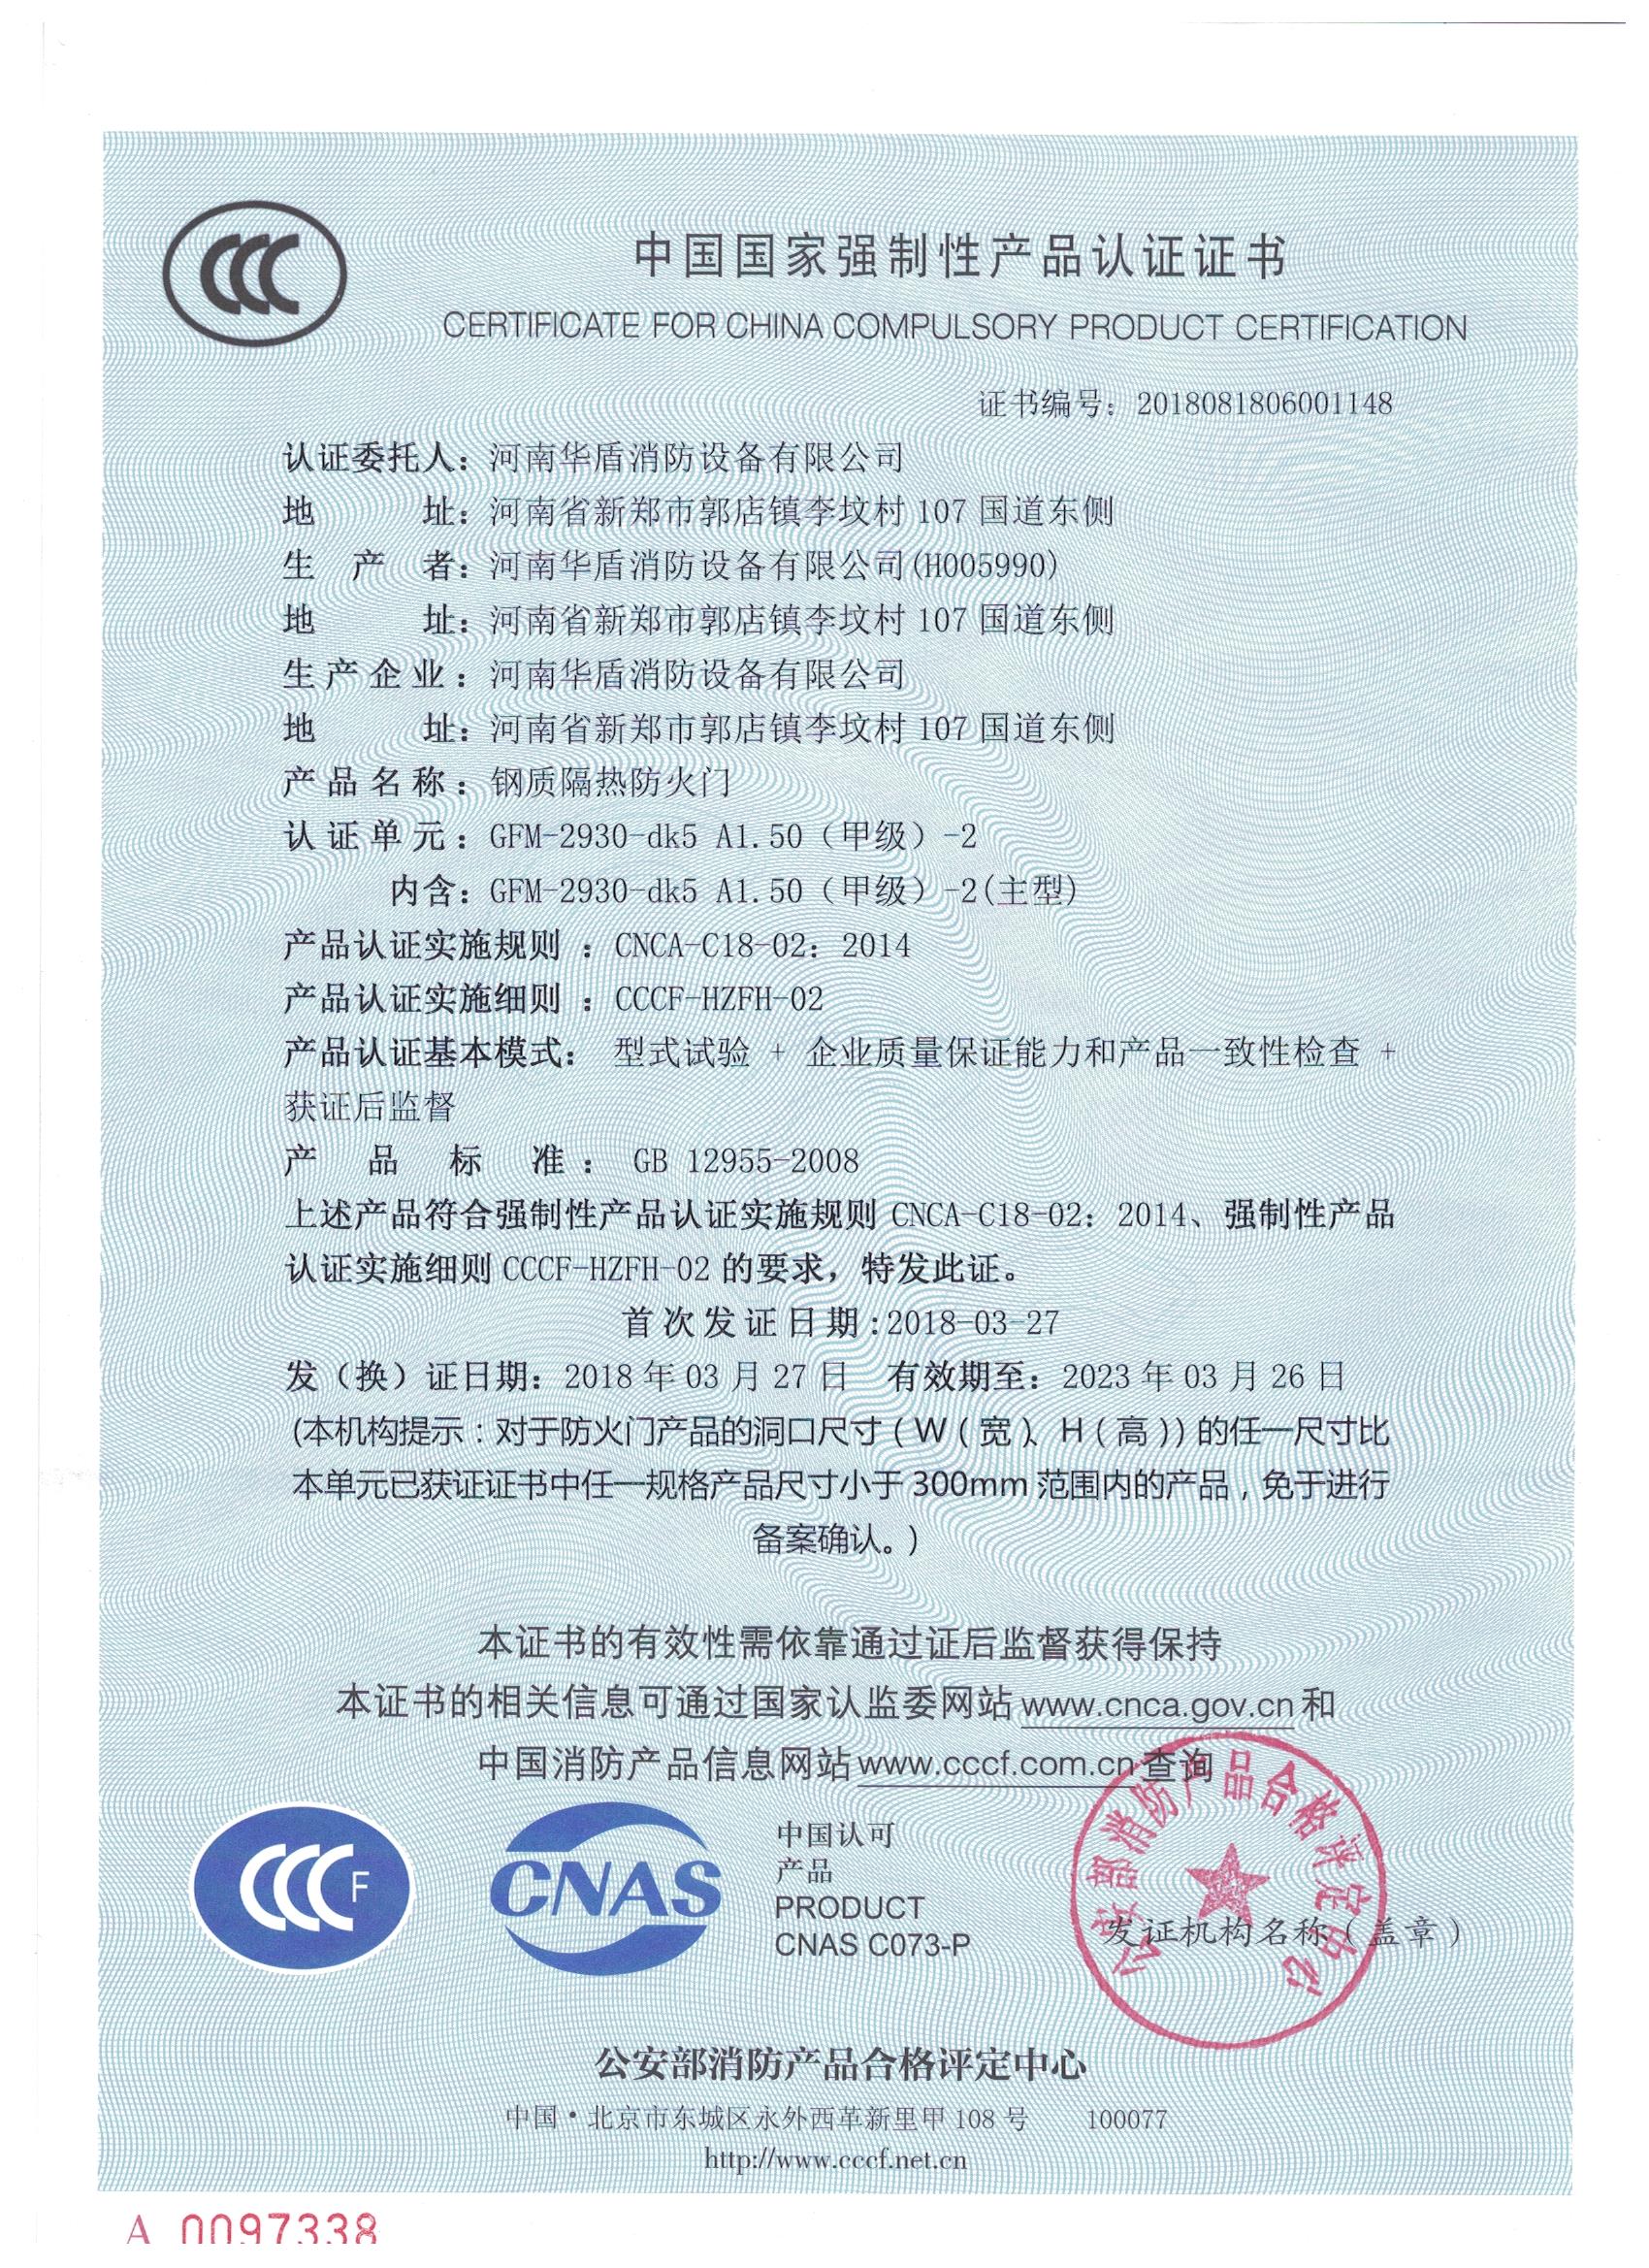 洛阳GFM-2930-dk5A1.50(甲级）-2-3C证书